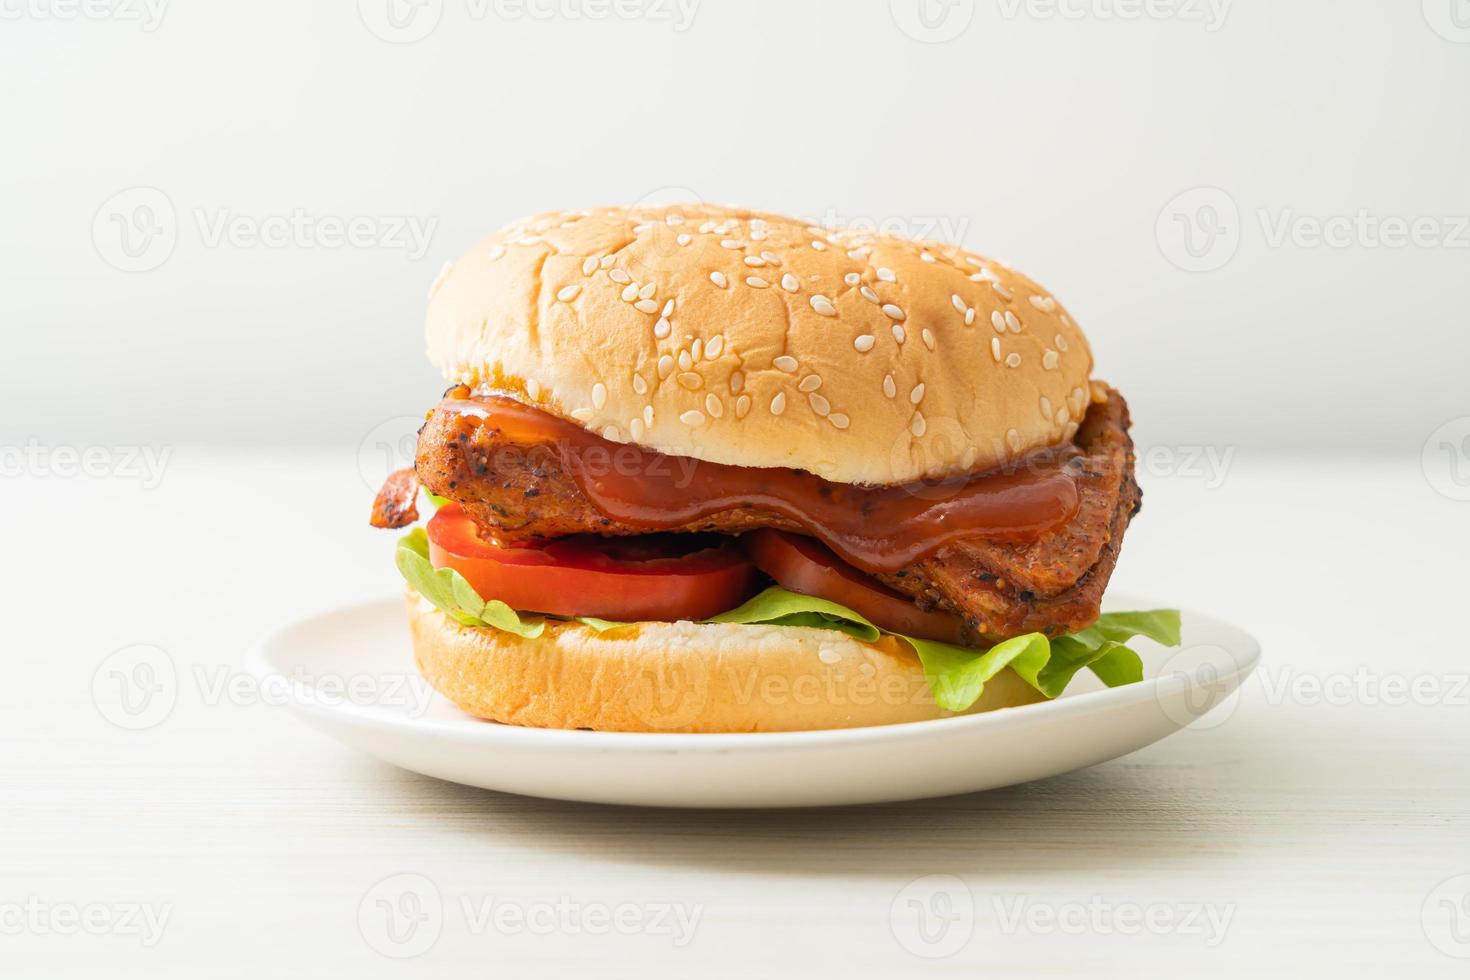 grillad kycklingburger med sås på den vita plattan foto